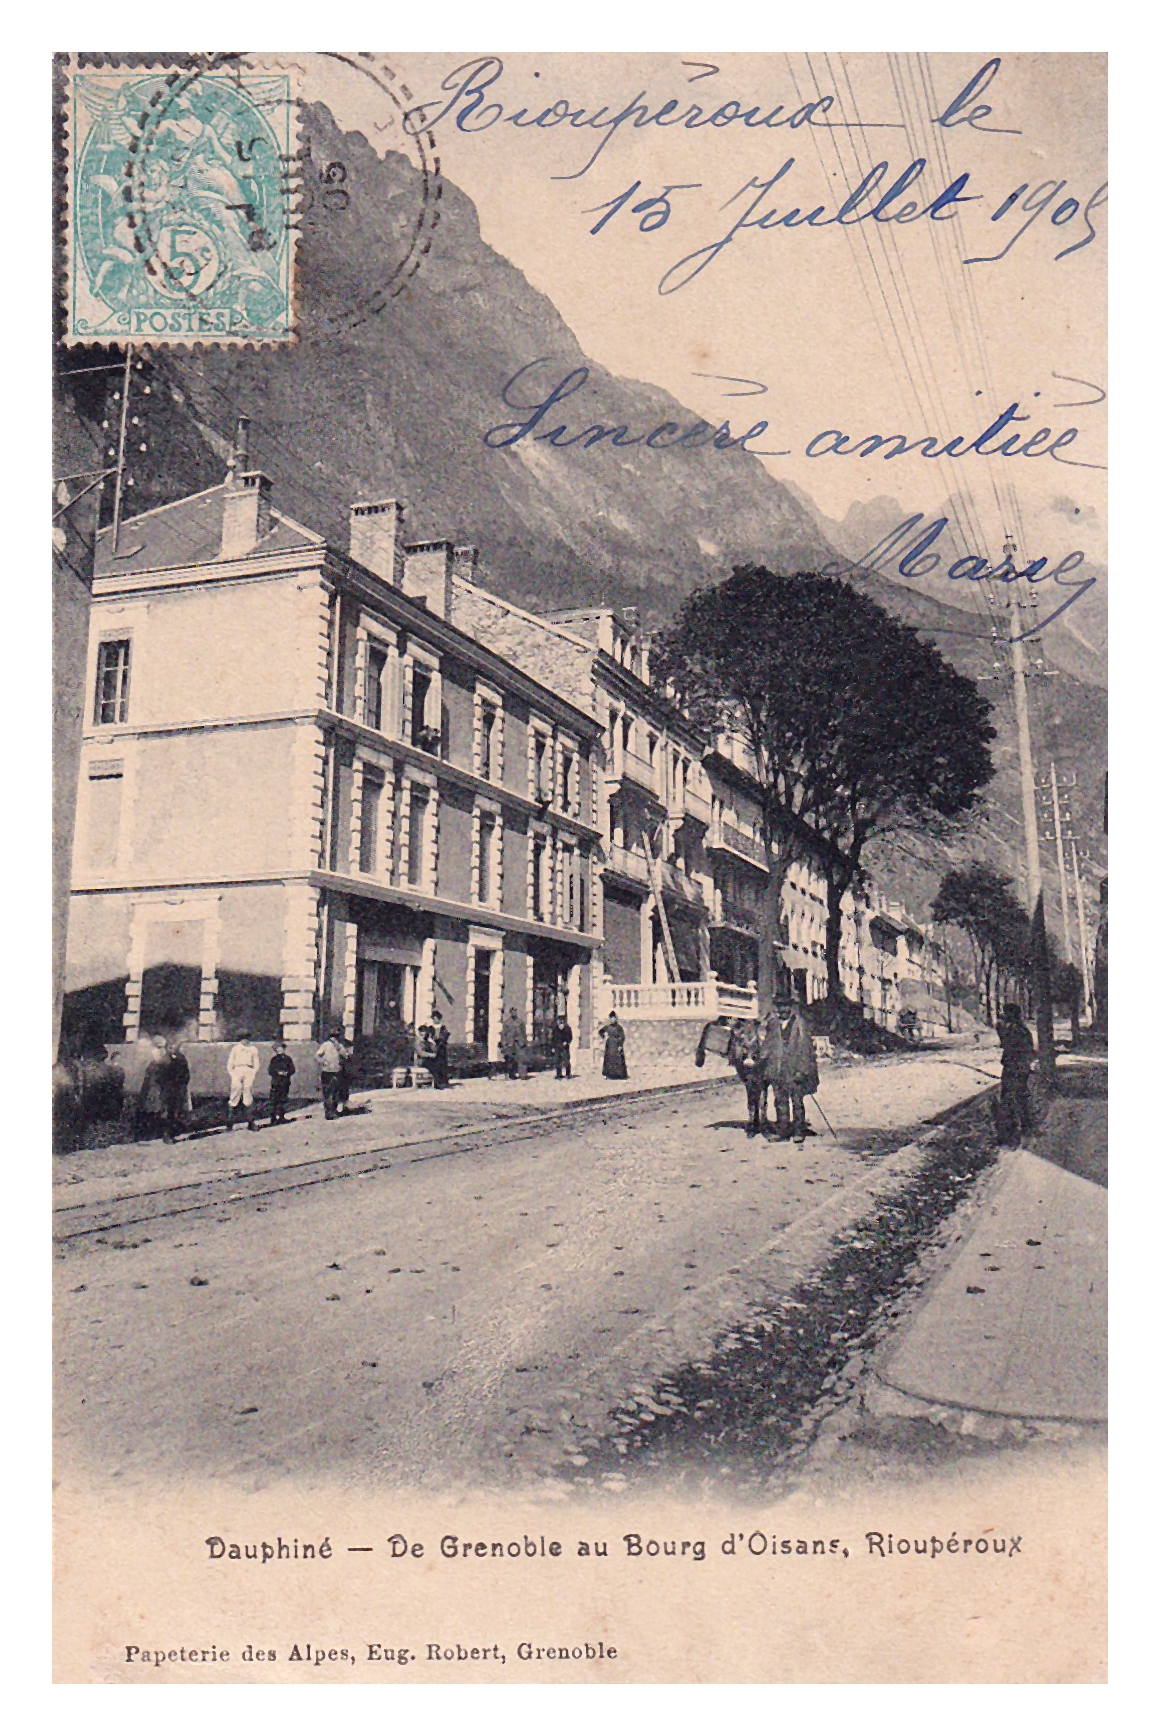 - De Grenoble au Bourg d'Oisans - RIOUPÉROUX - 15.07.1905 -